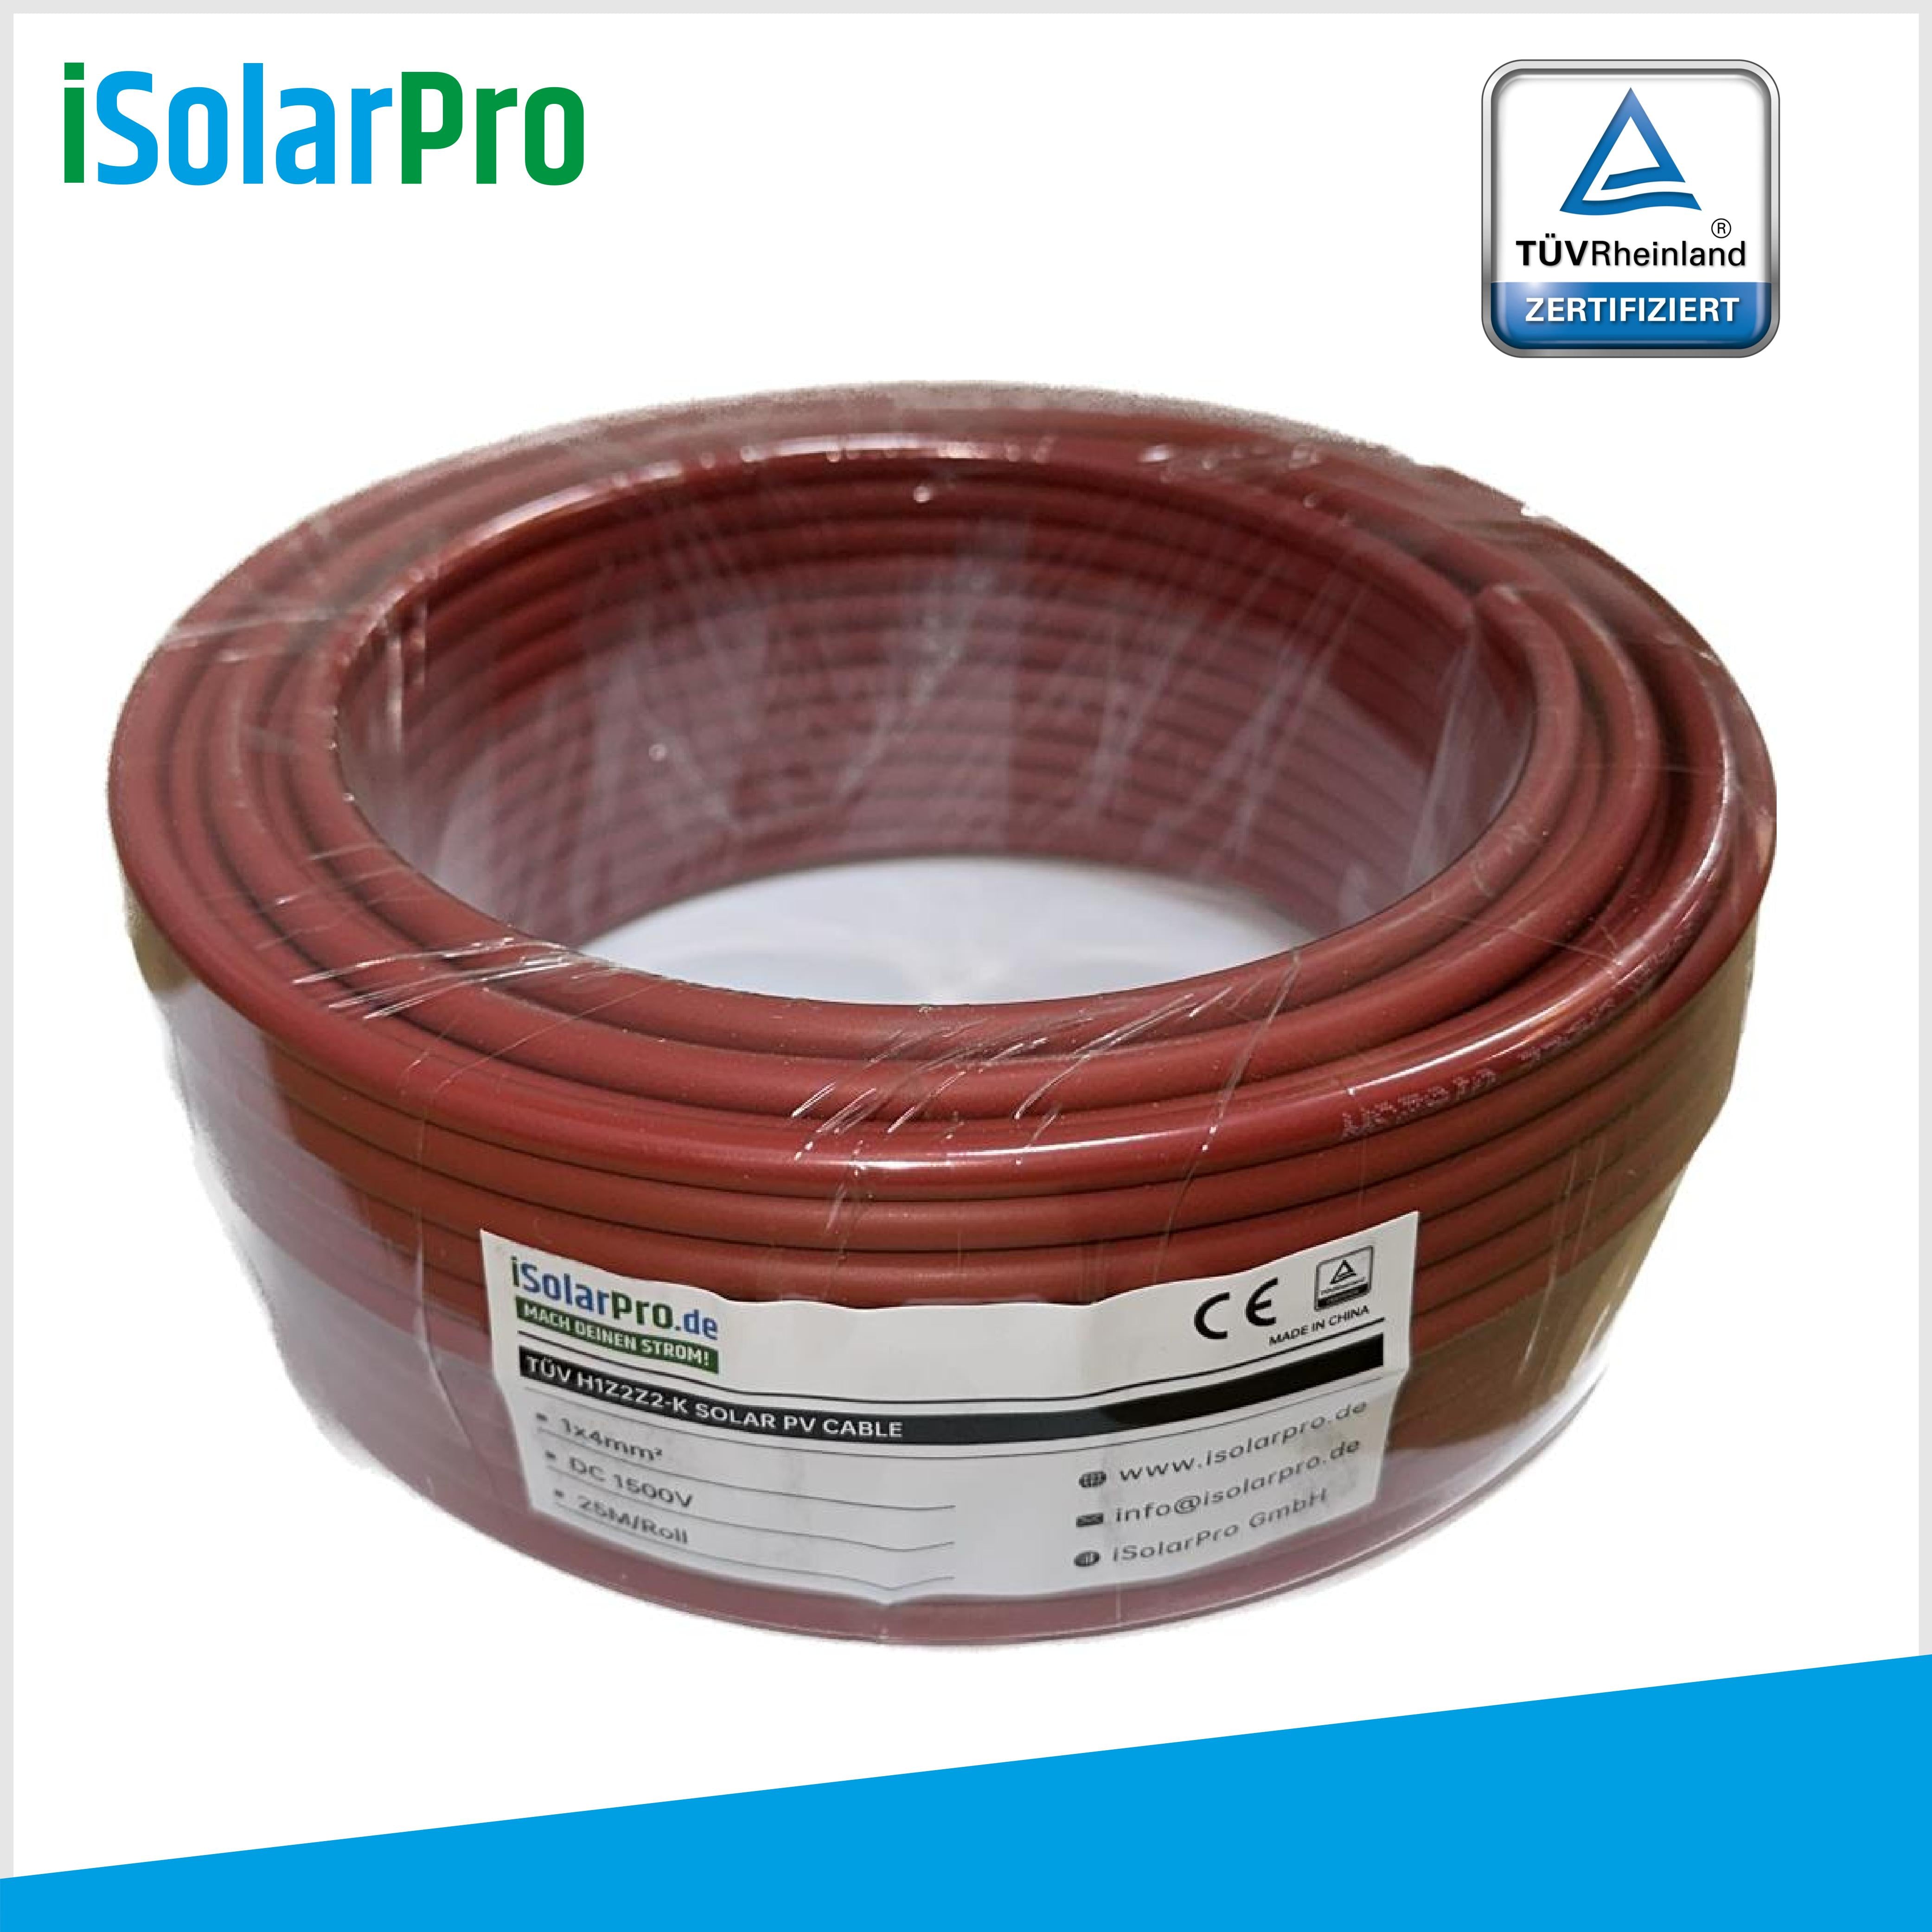 25m Solarkabel 4 mm² Photovoltaik Kabel für PV Anlagen rot